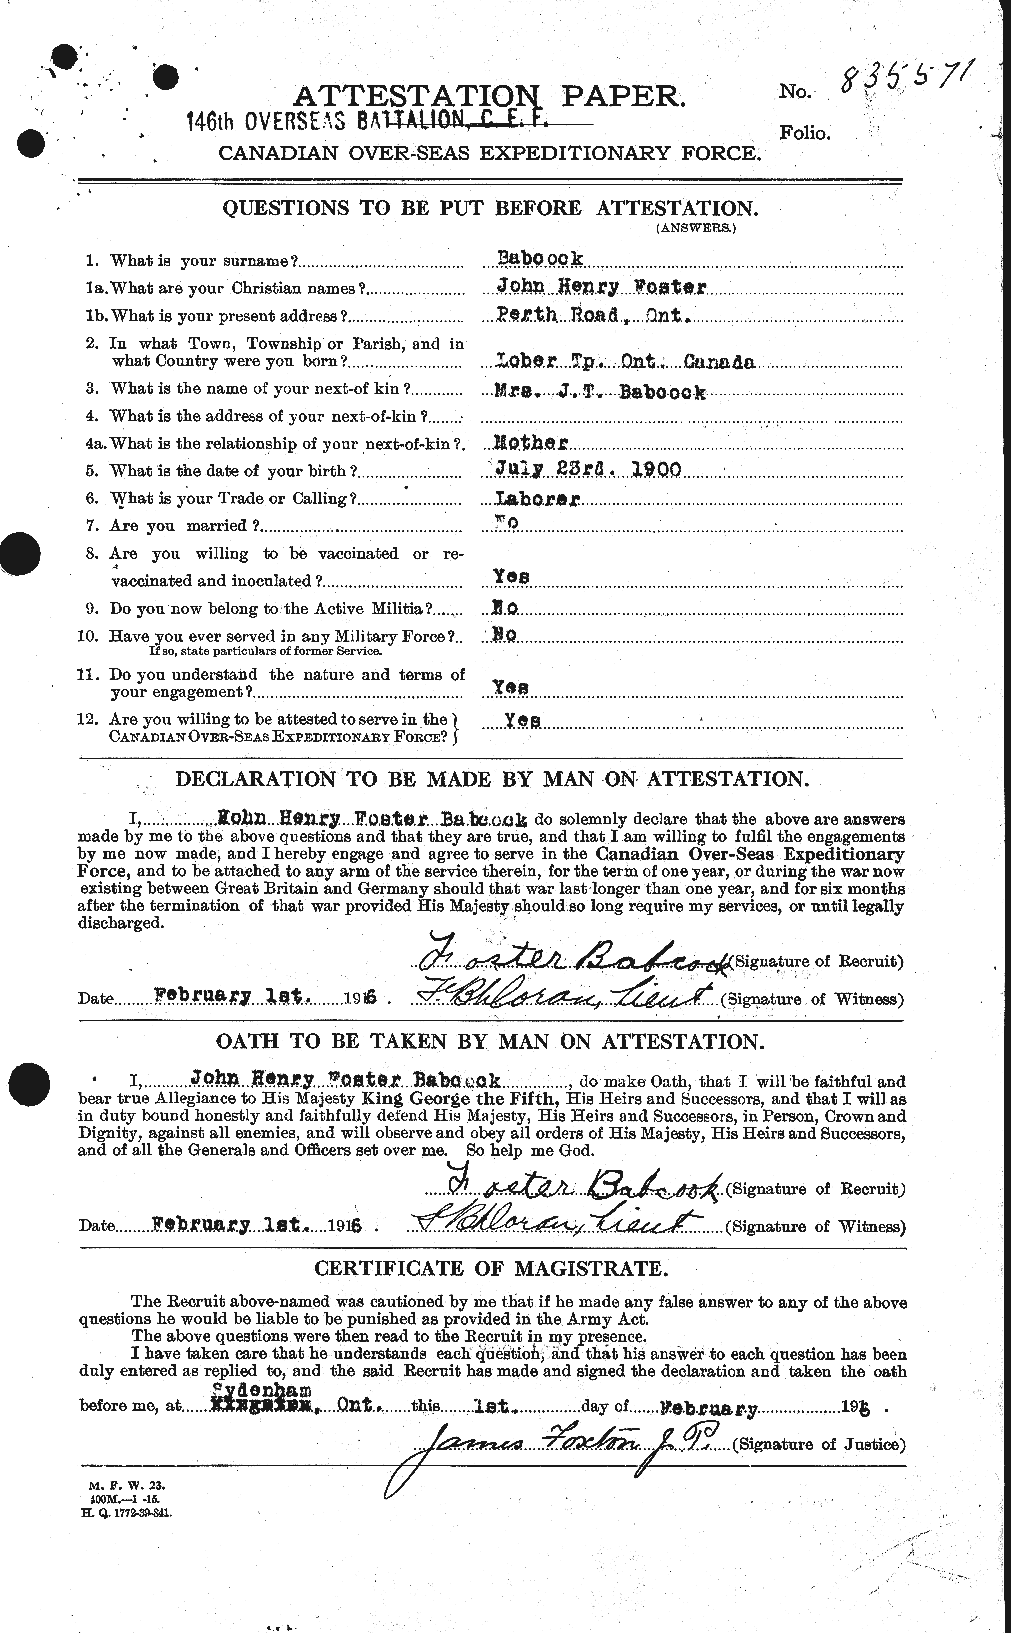 Dossiers du Personnel de la Première Guerre mondiale - CEC 218225a